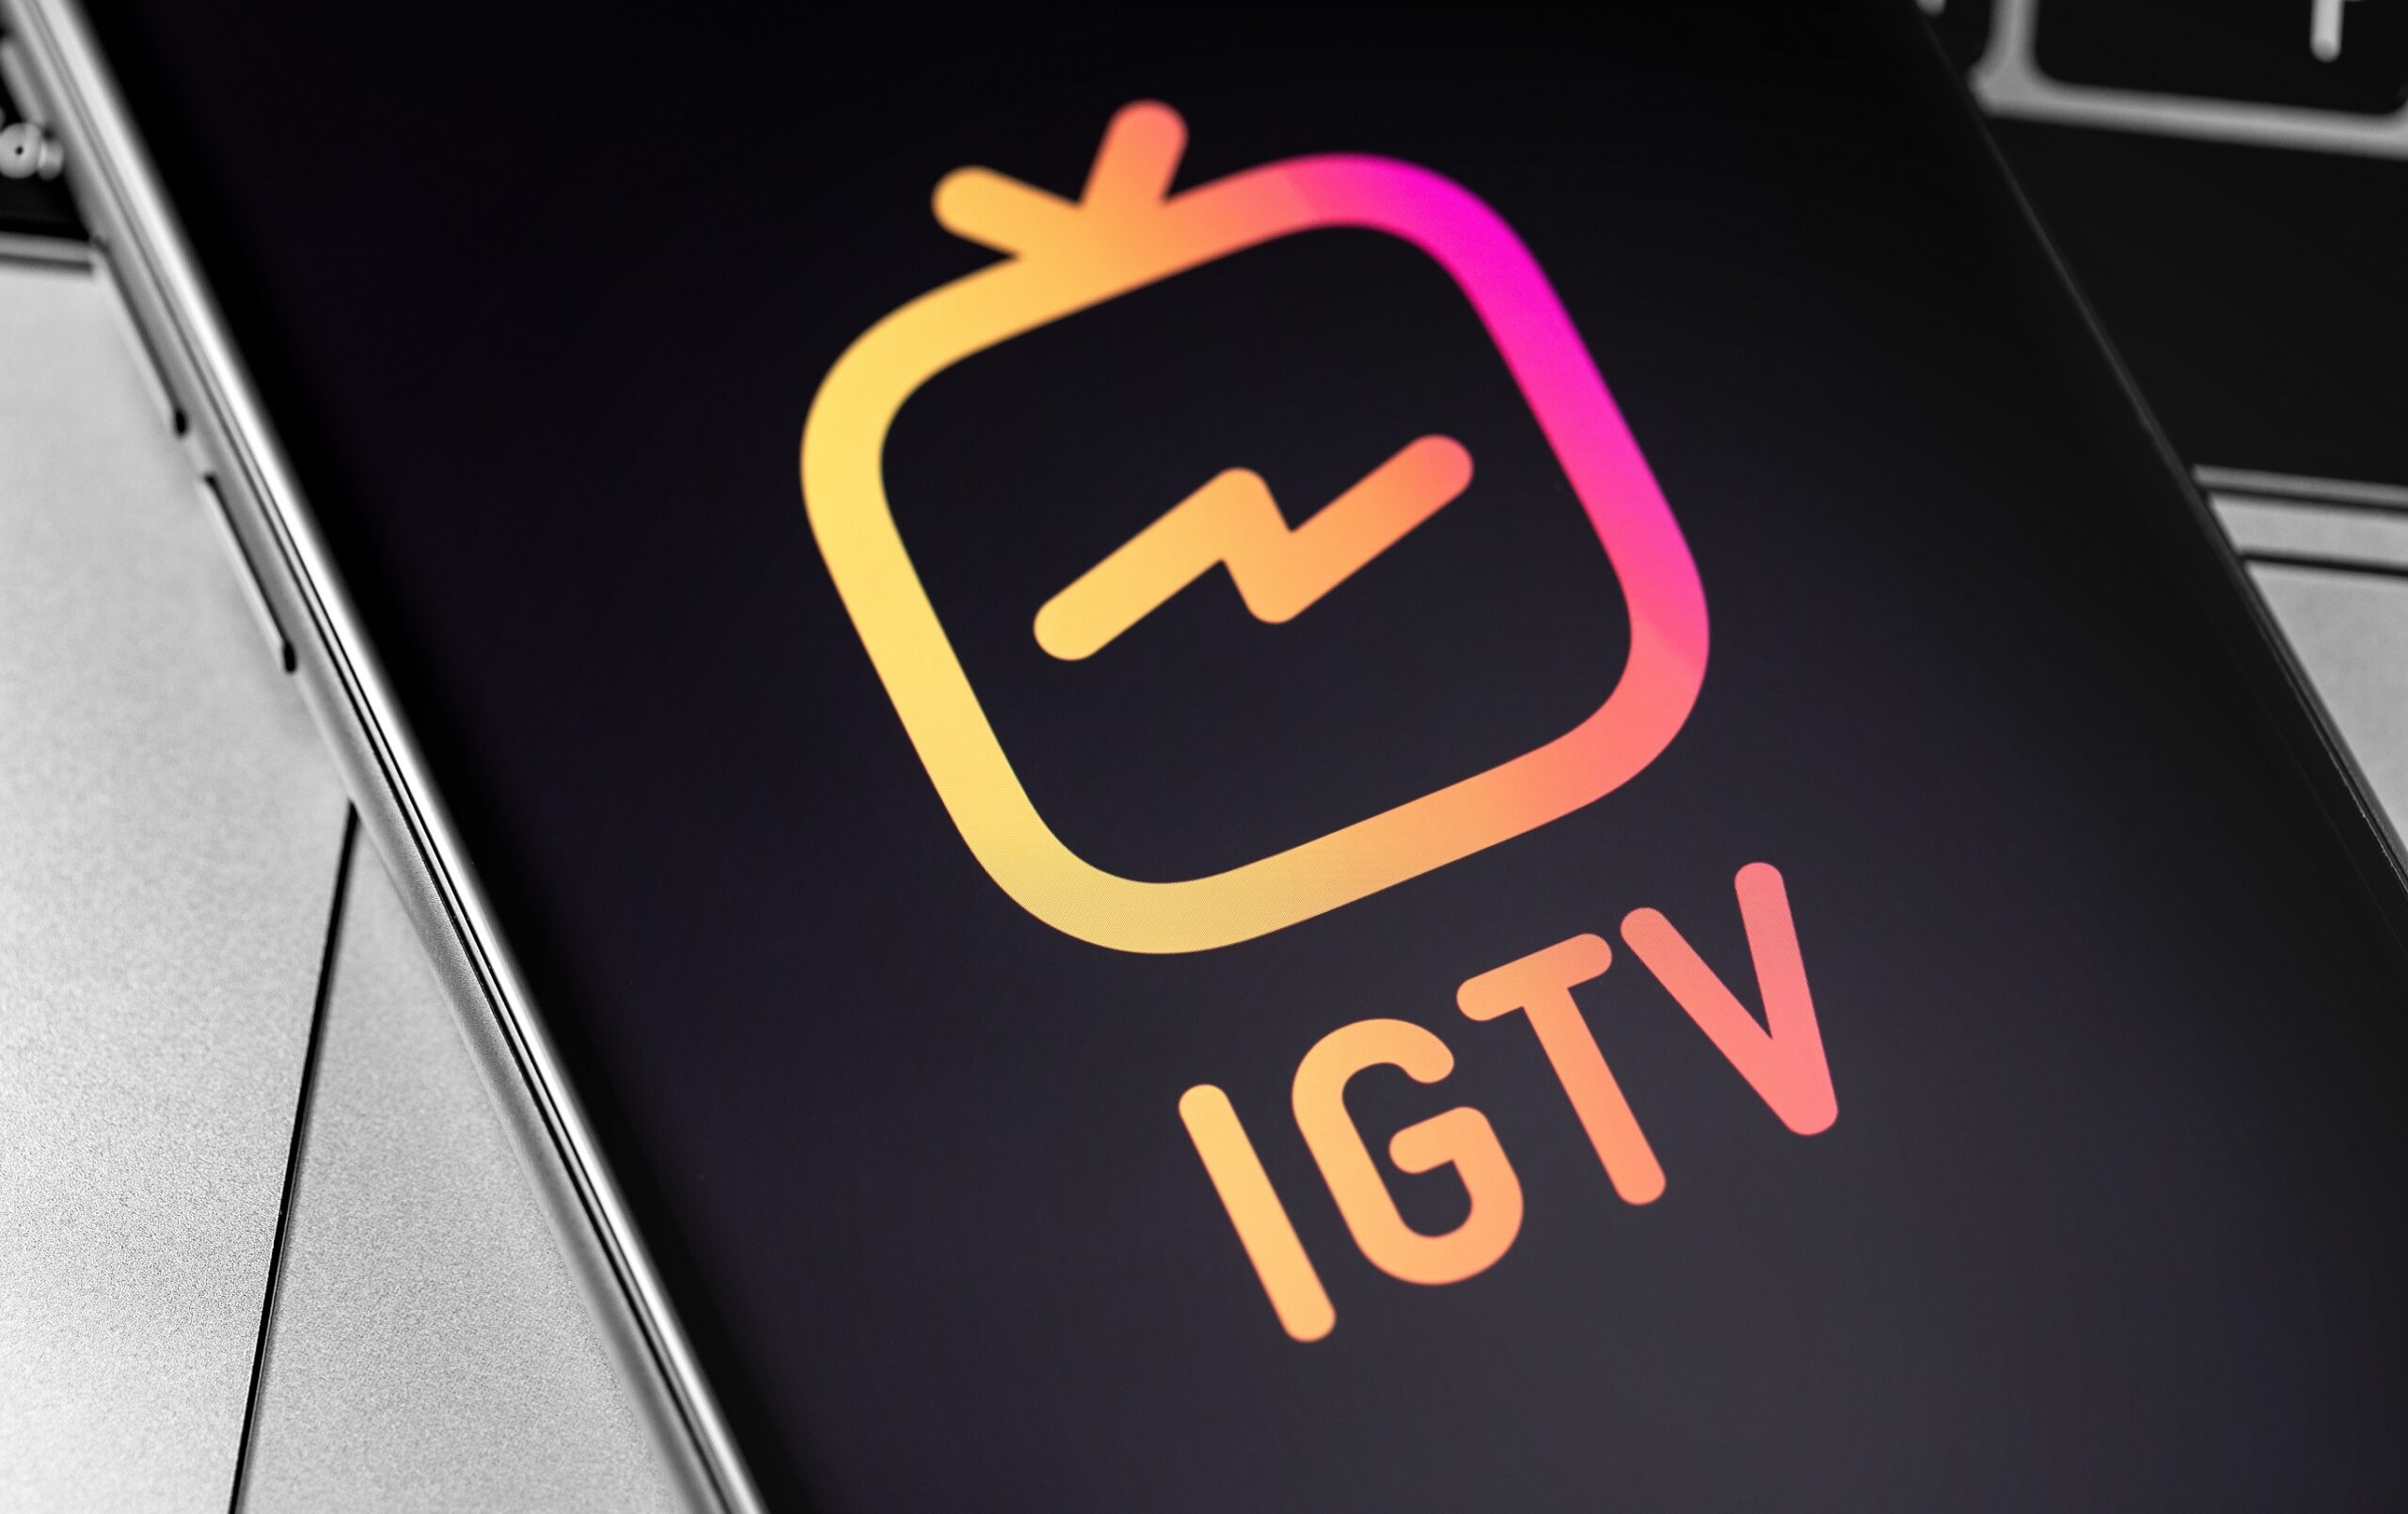 スマホに表示されている黒い背景にオレンジとピンクのIGTVのマーク